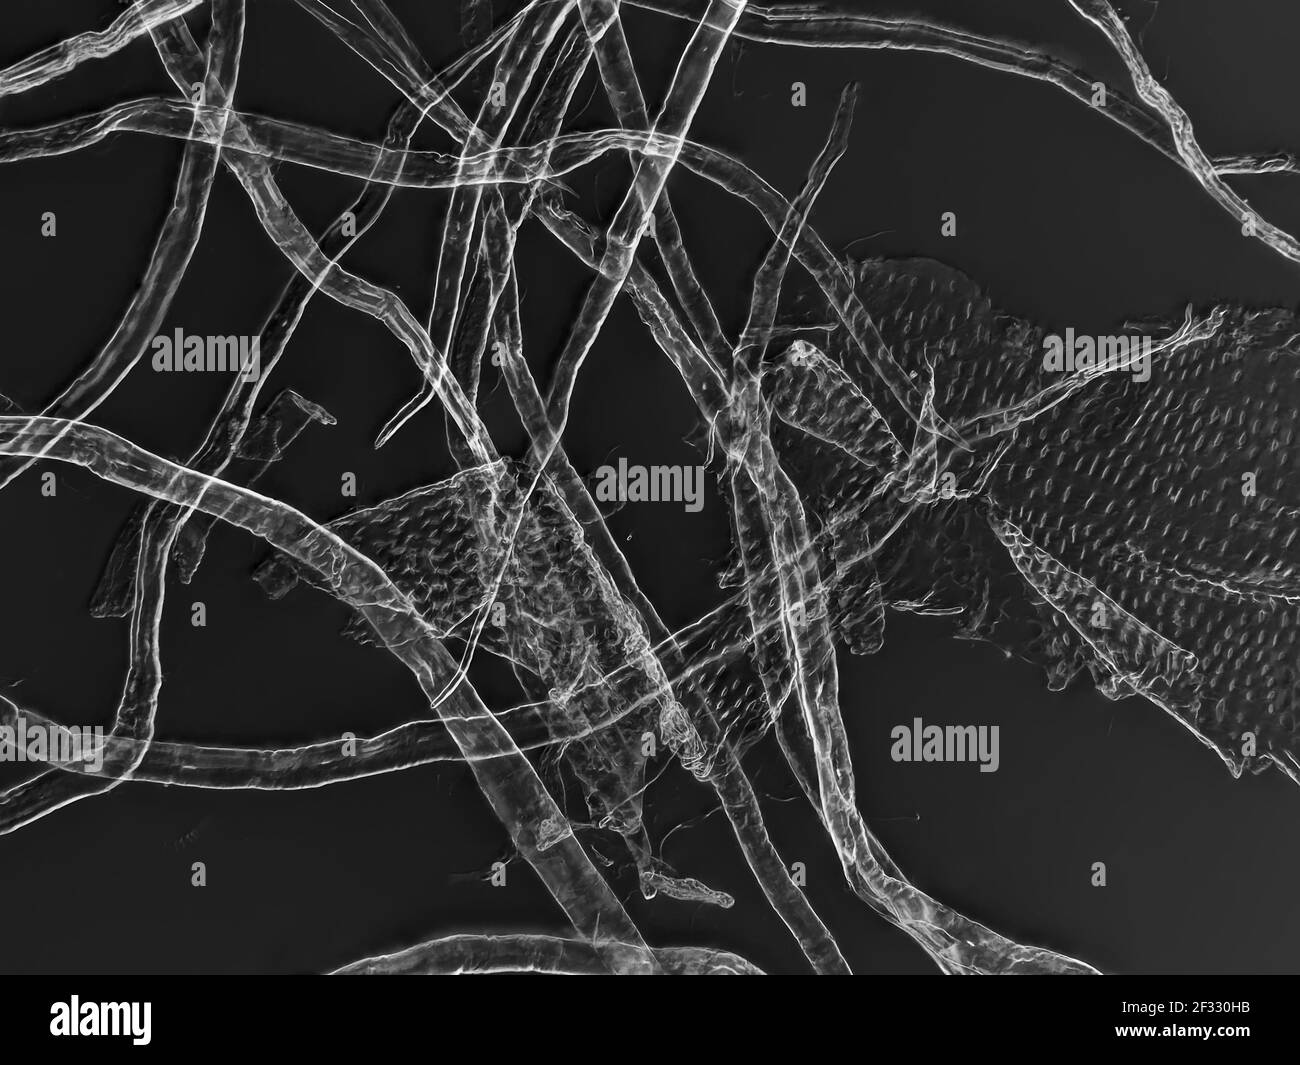 Fibras de celulosa de papel higiénico bajo el microscopio, horizontal archivado de la vista es de aproximadamente 0,61mm Foto de stock